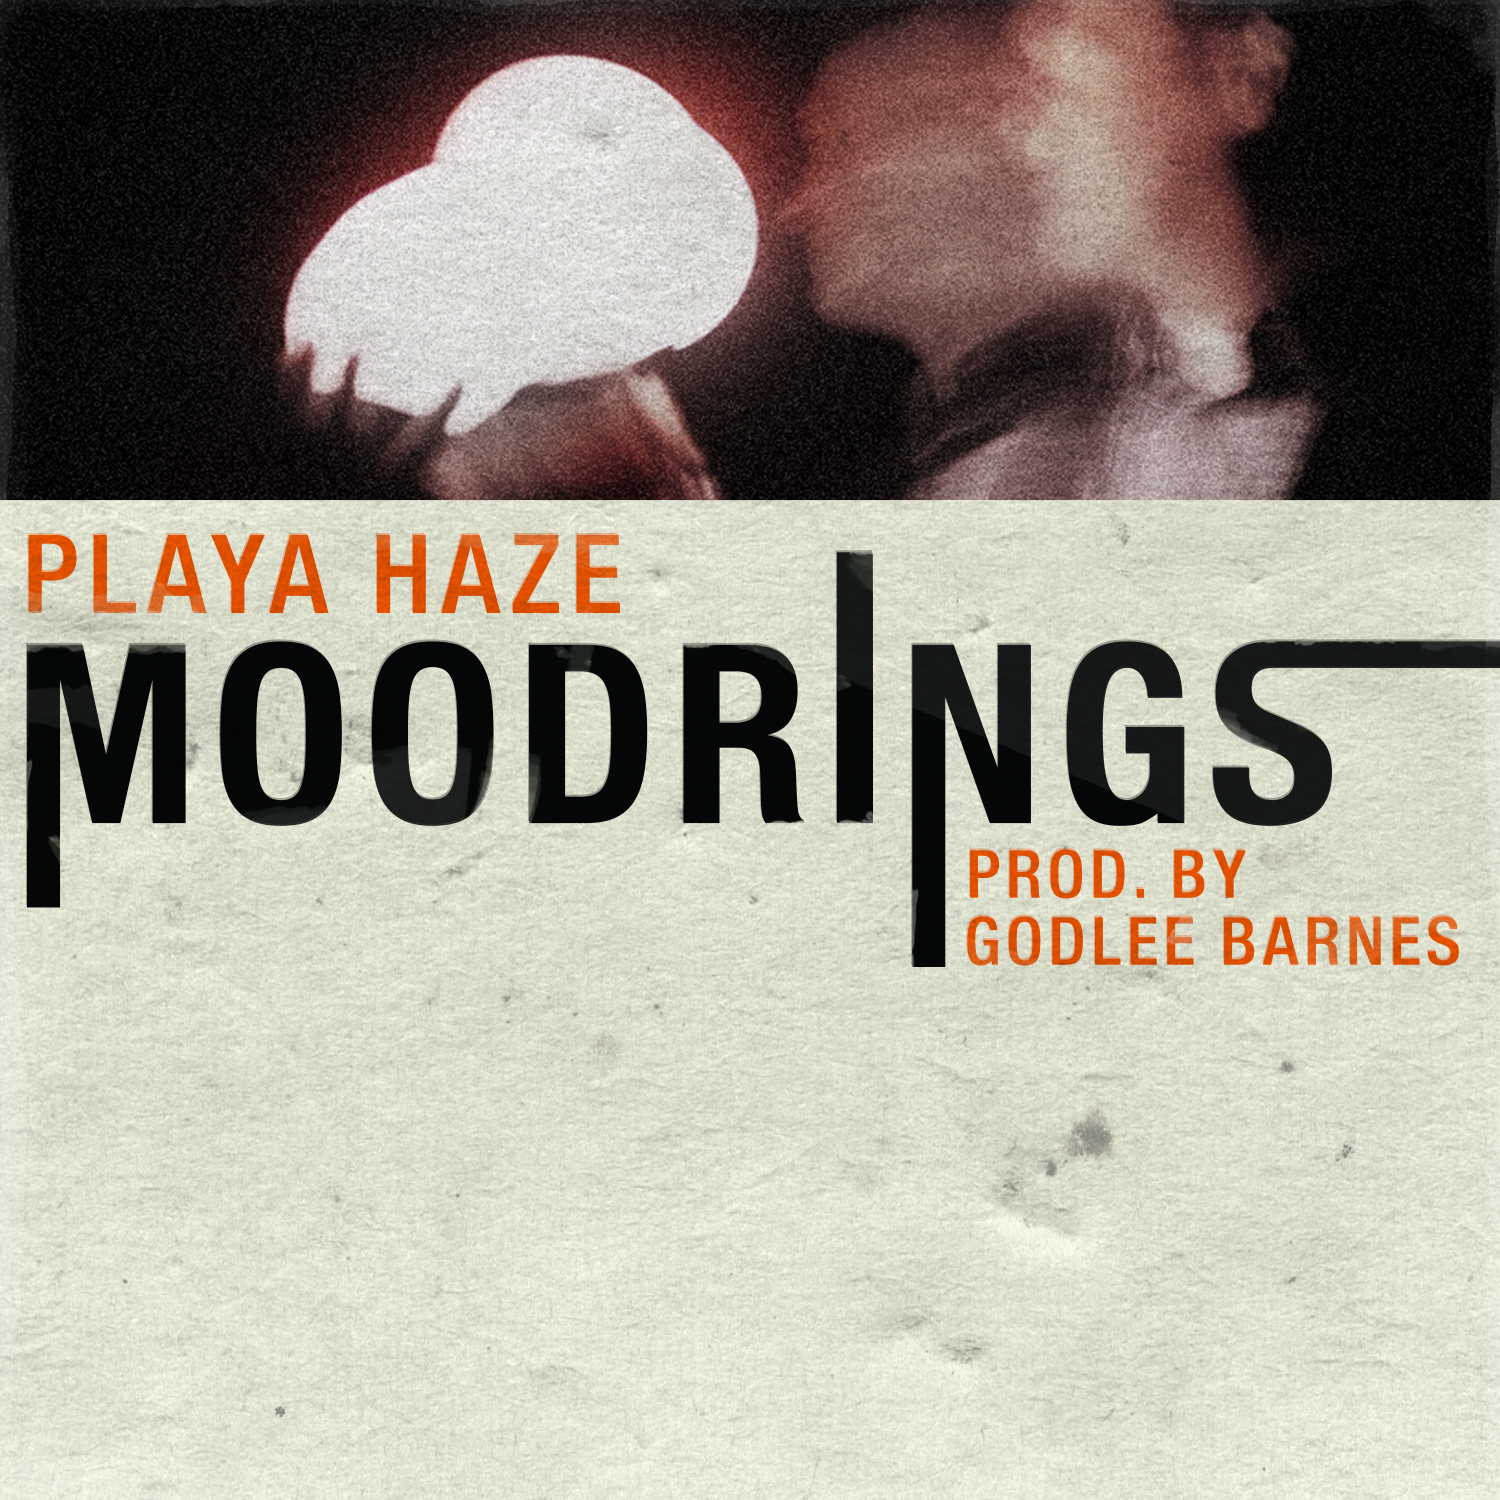 Playa Haze "Moodrings" Video | @devinwelch